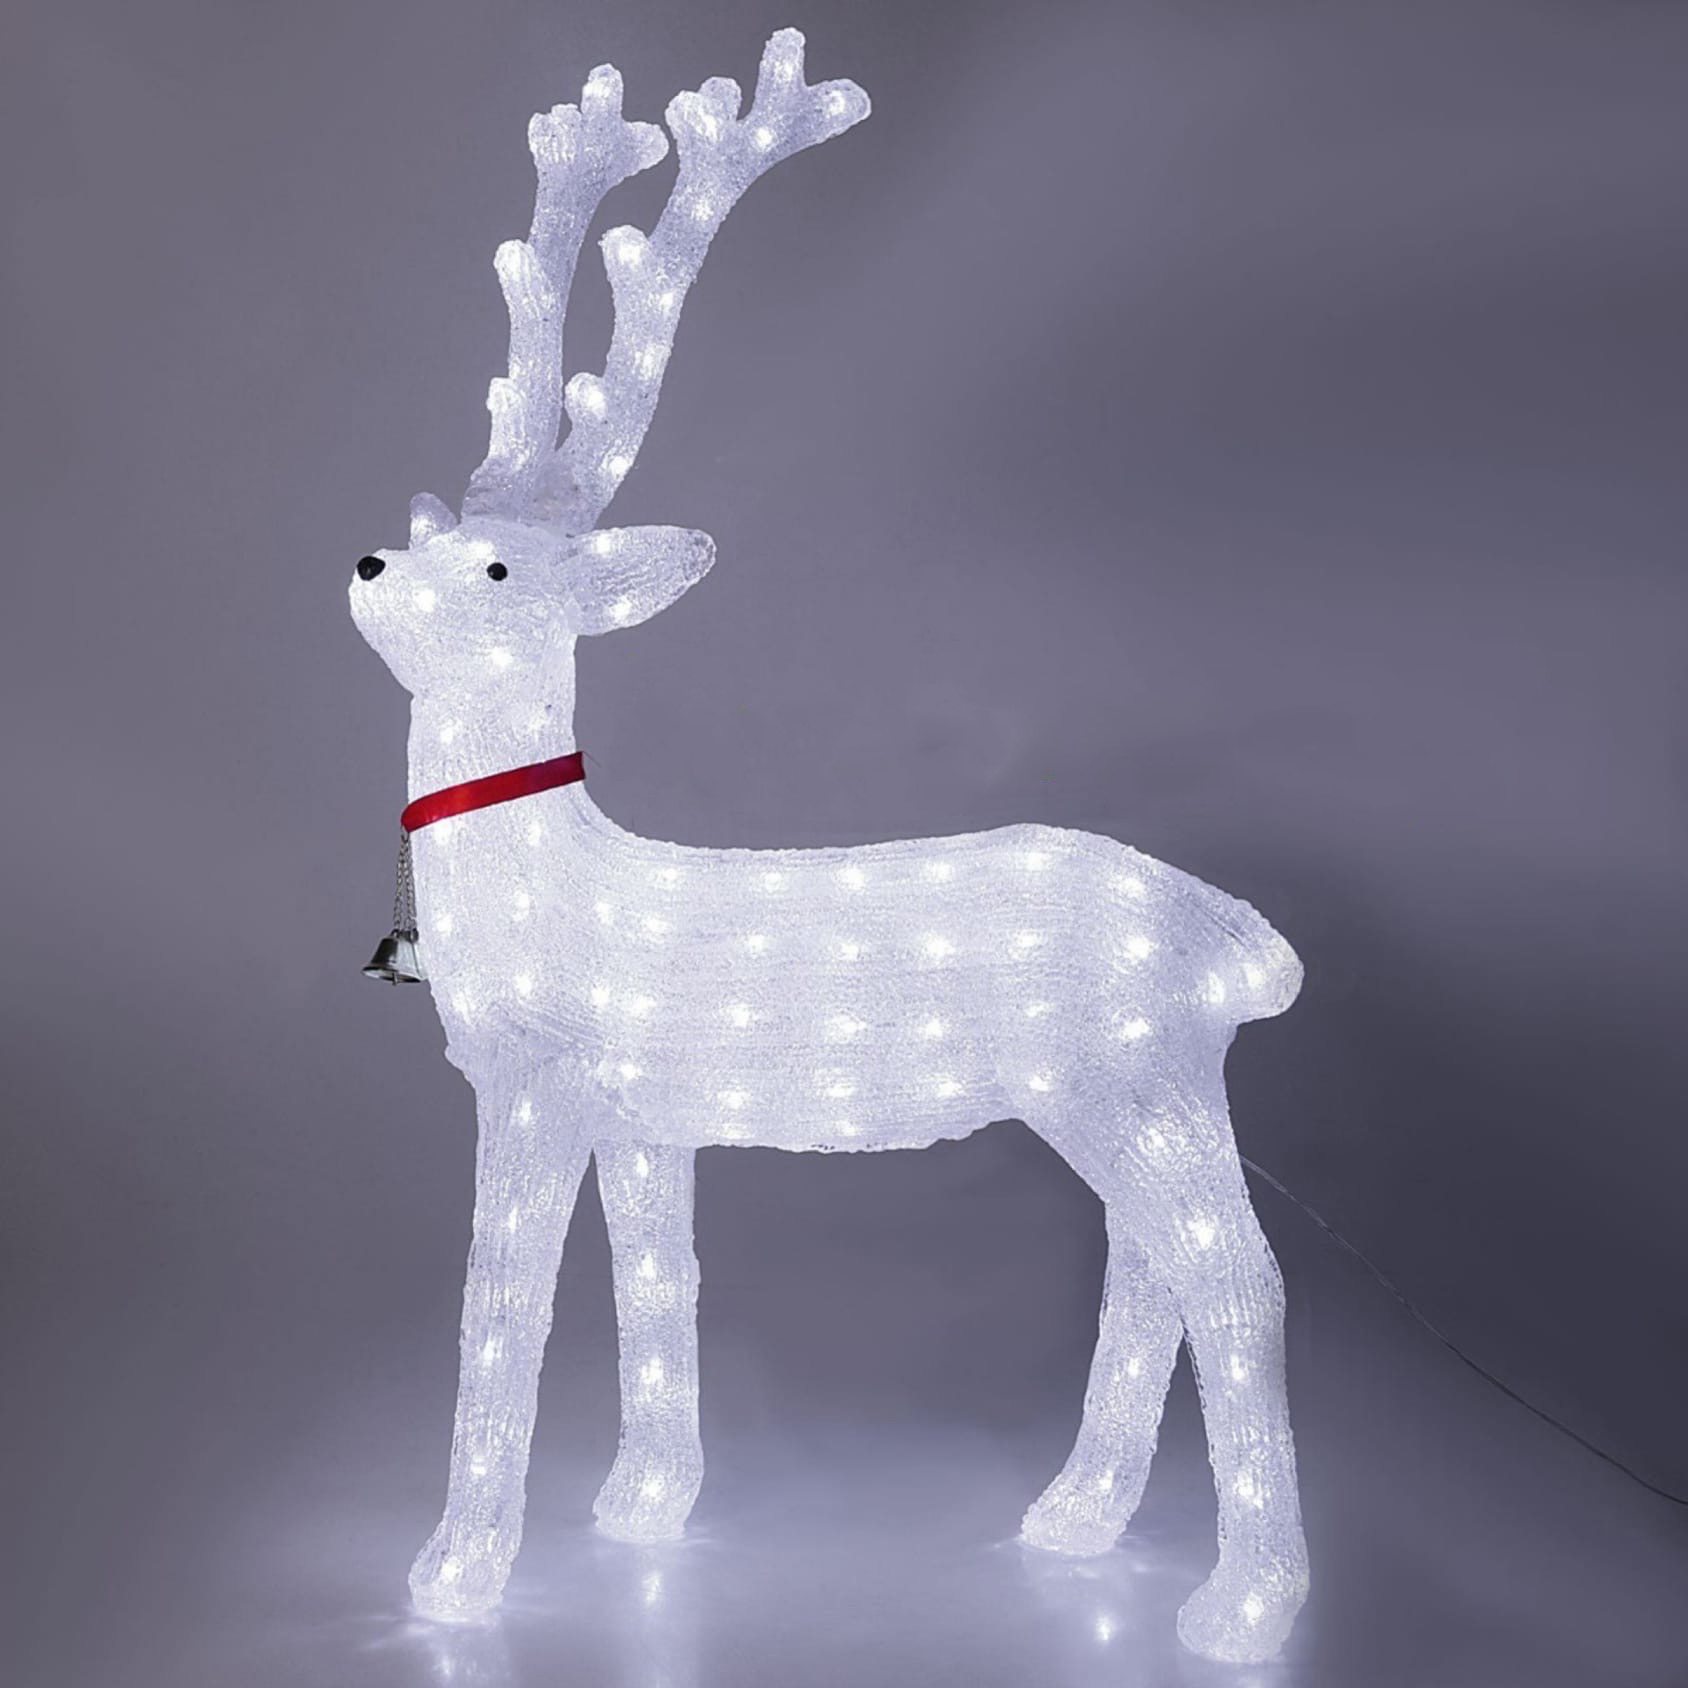 Олень купить в москве. Фигура световая олень Obi Christmas 56 led 78 см теплый белый. Светящаяся фигура олень. Олень новогодний светящийся. Олень фигура Новогодняя.